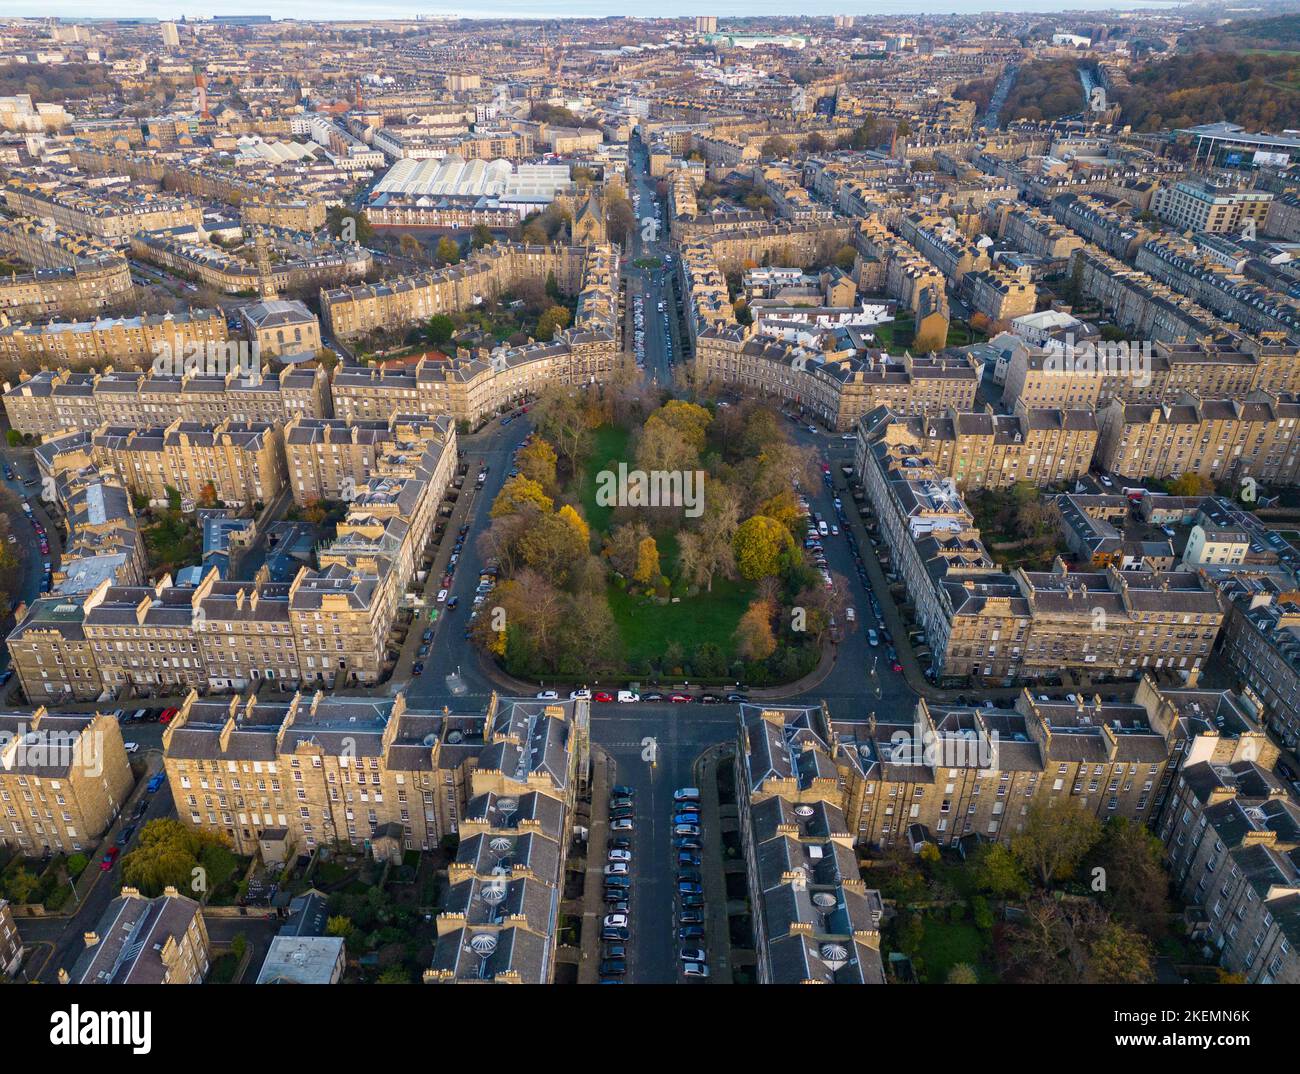 Vista aerea di Drummond Place a Edimburgo New Town, patrimonio dell'umanità dell'UNESCO, Scozia, Regno Unito Foto Stock